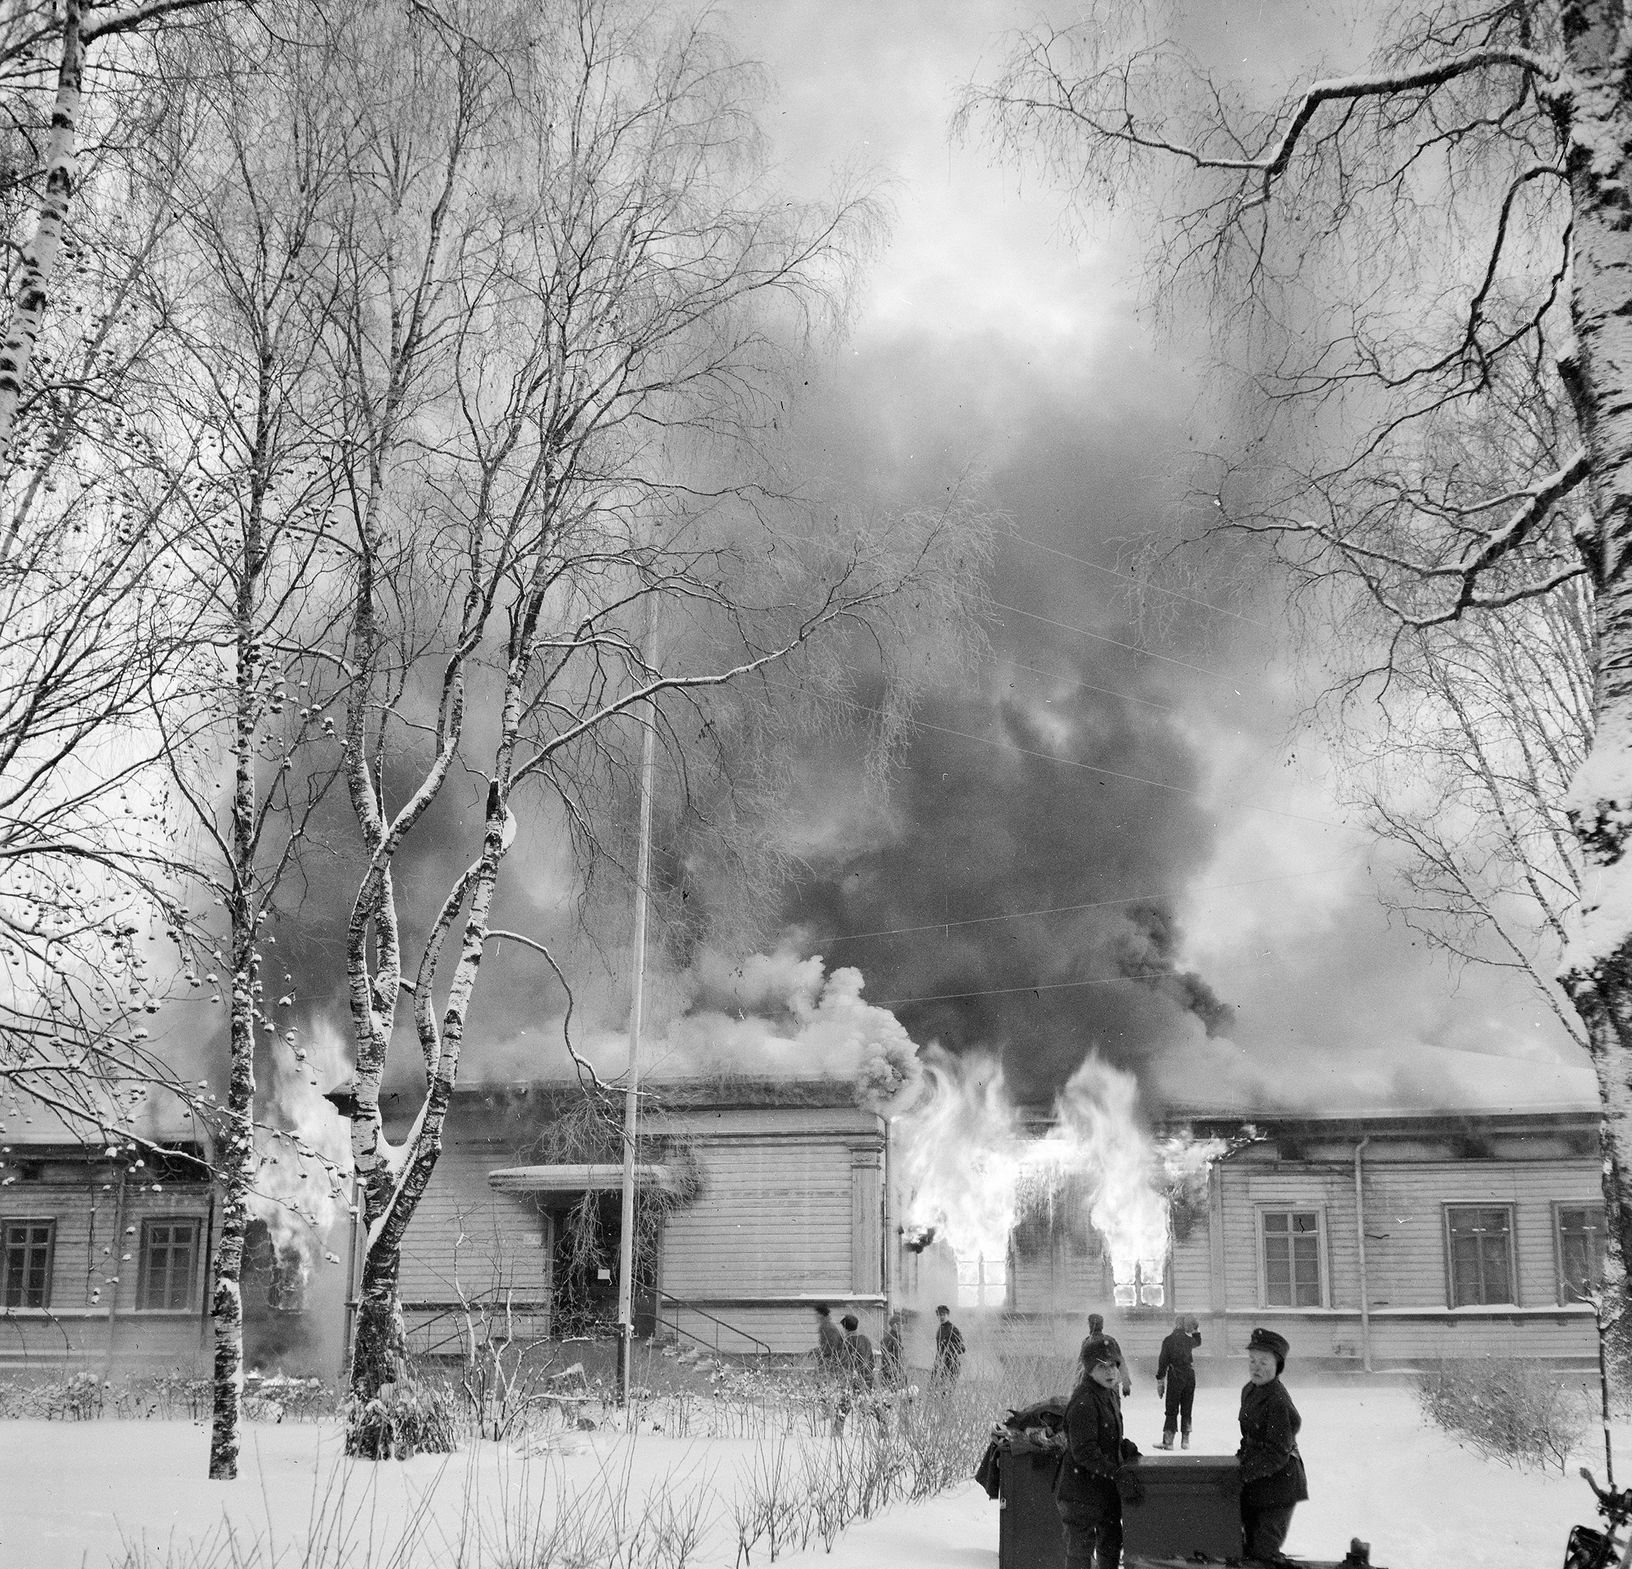 Fotogalerie / Zimní válka / Finsko vs. SSSR / 1939-1940 / Sa-Kuva